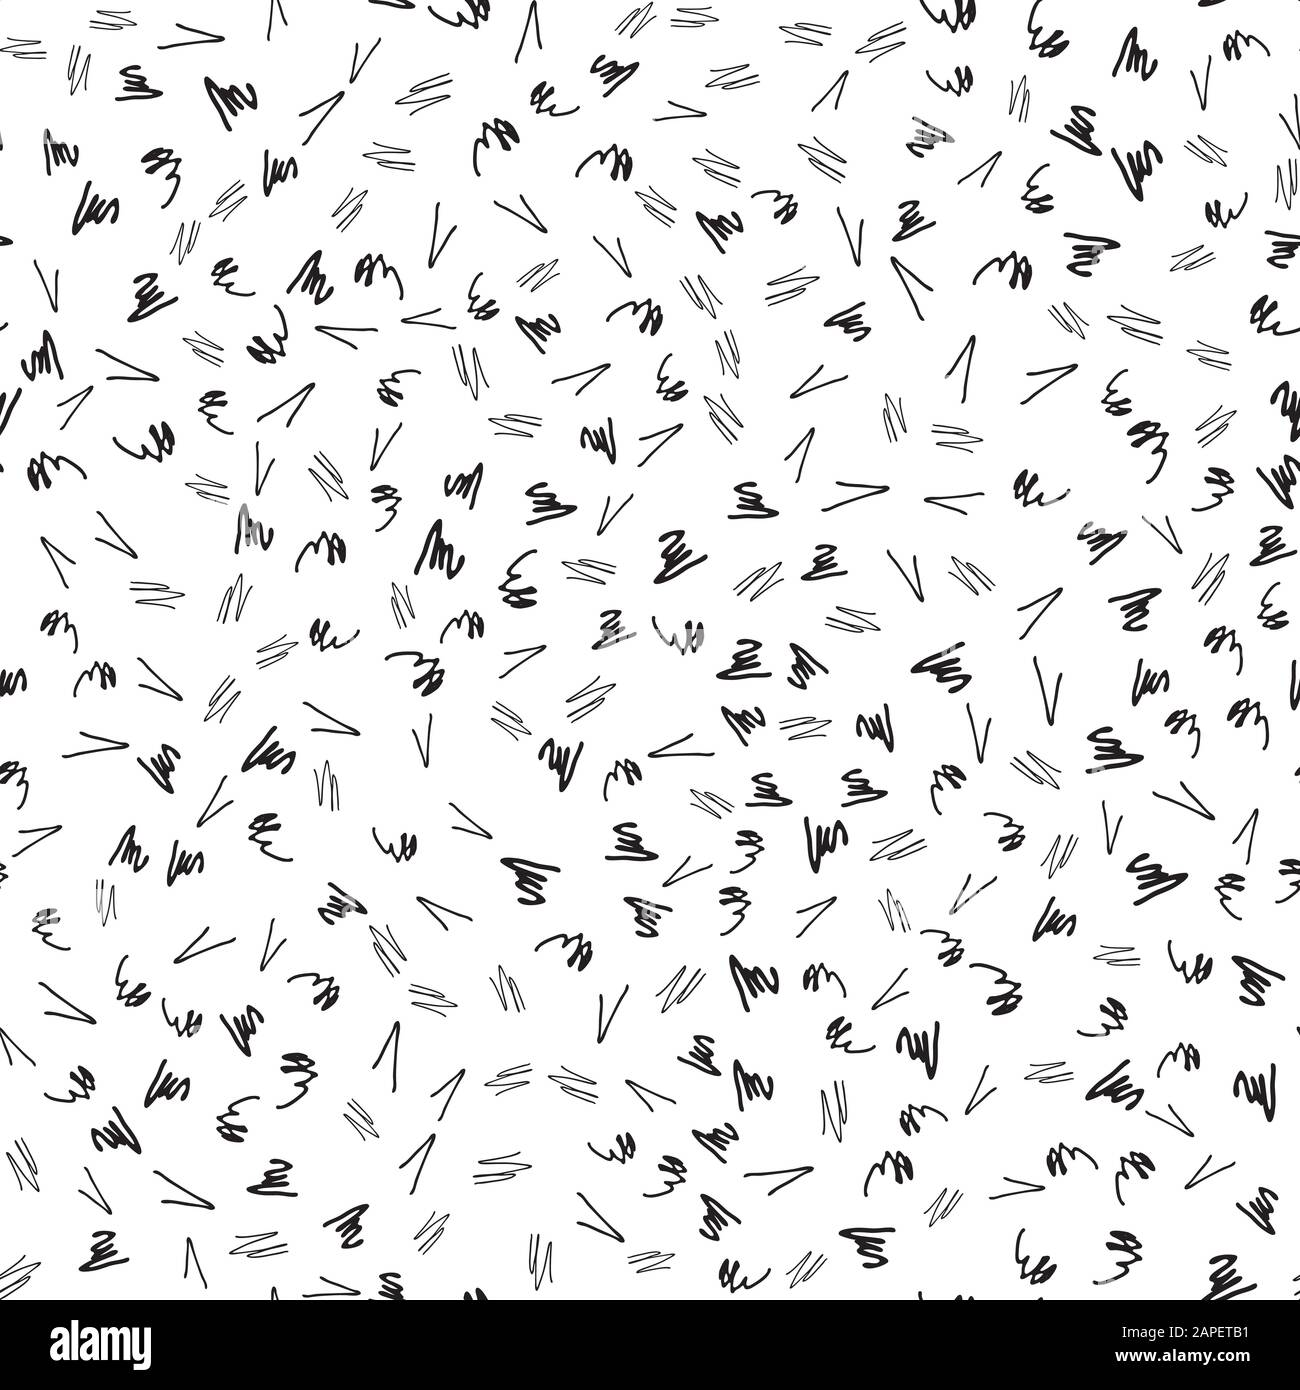 Zusammenfassung nahtlose Muster mit Gekritzel auf weißen Hintergrund. Einfache abstrakte Muster Hintergrund für interrior, Textildesign, Papier Handwerk. Hand gezeichnet Stock Vektor